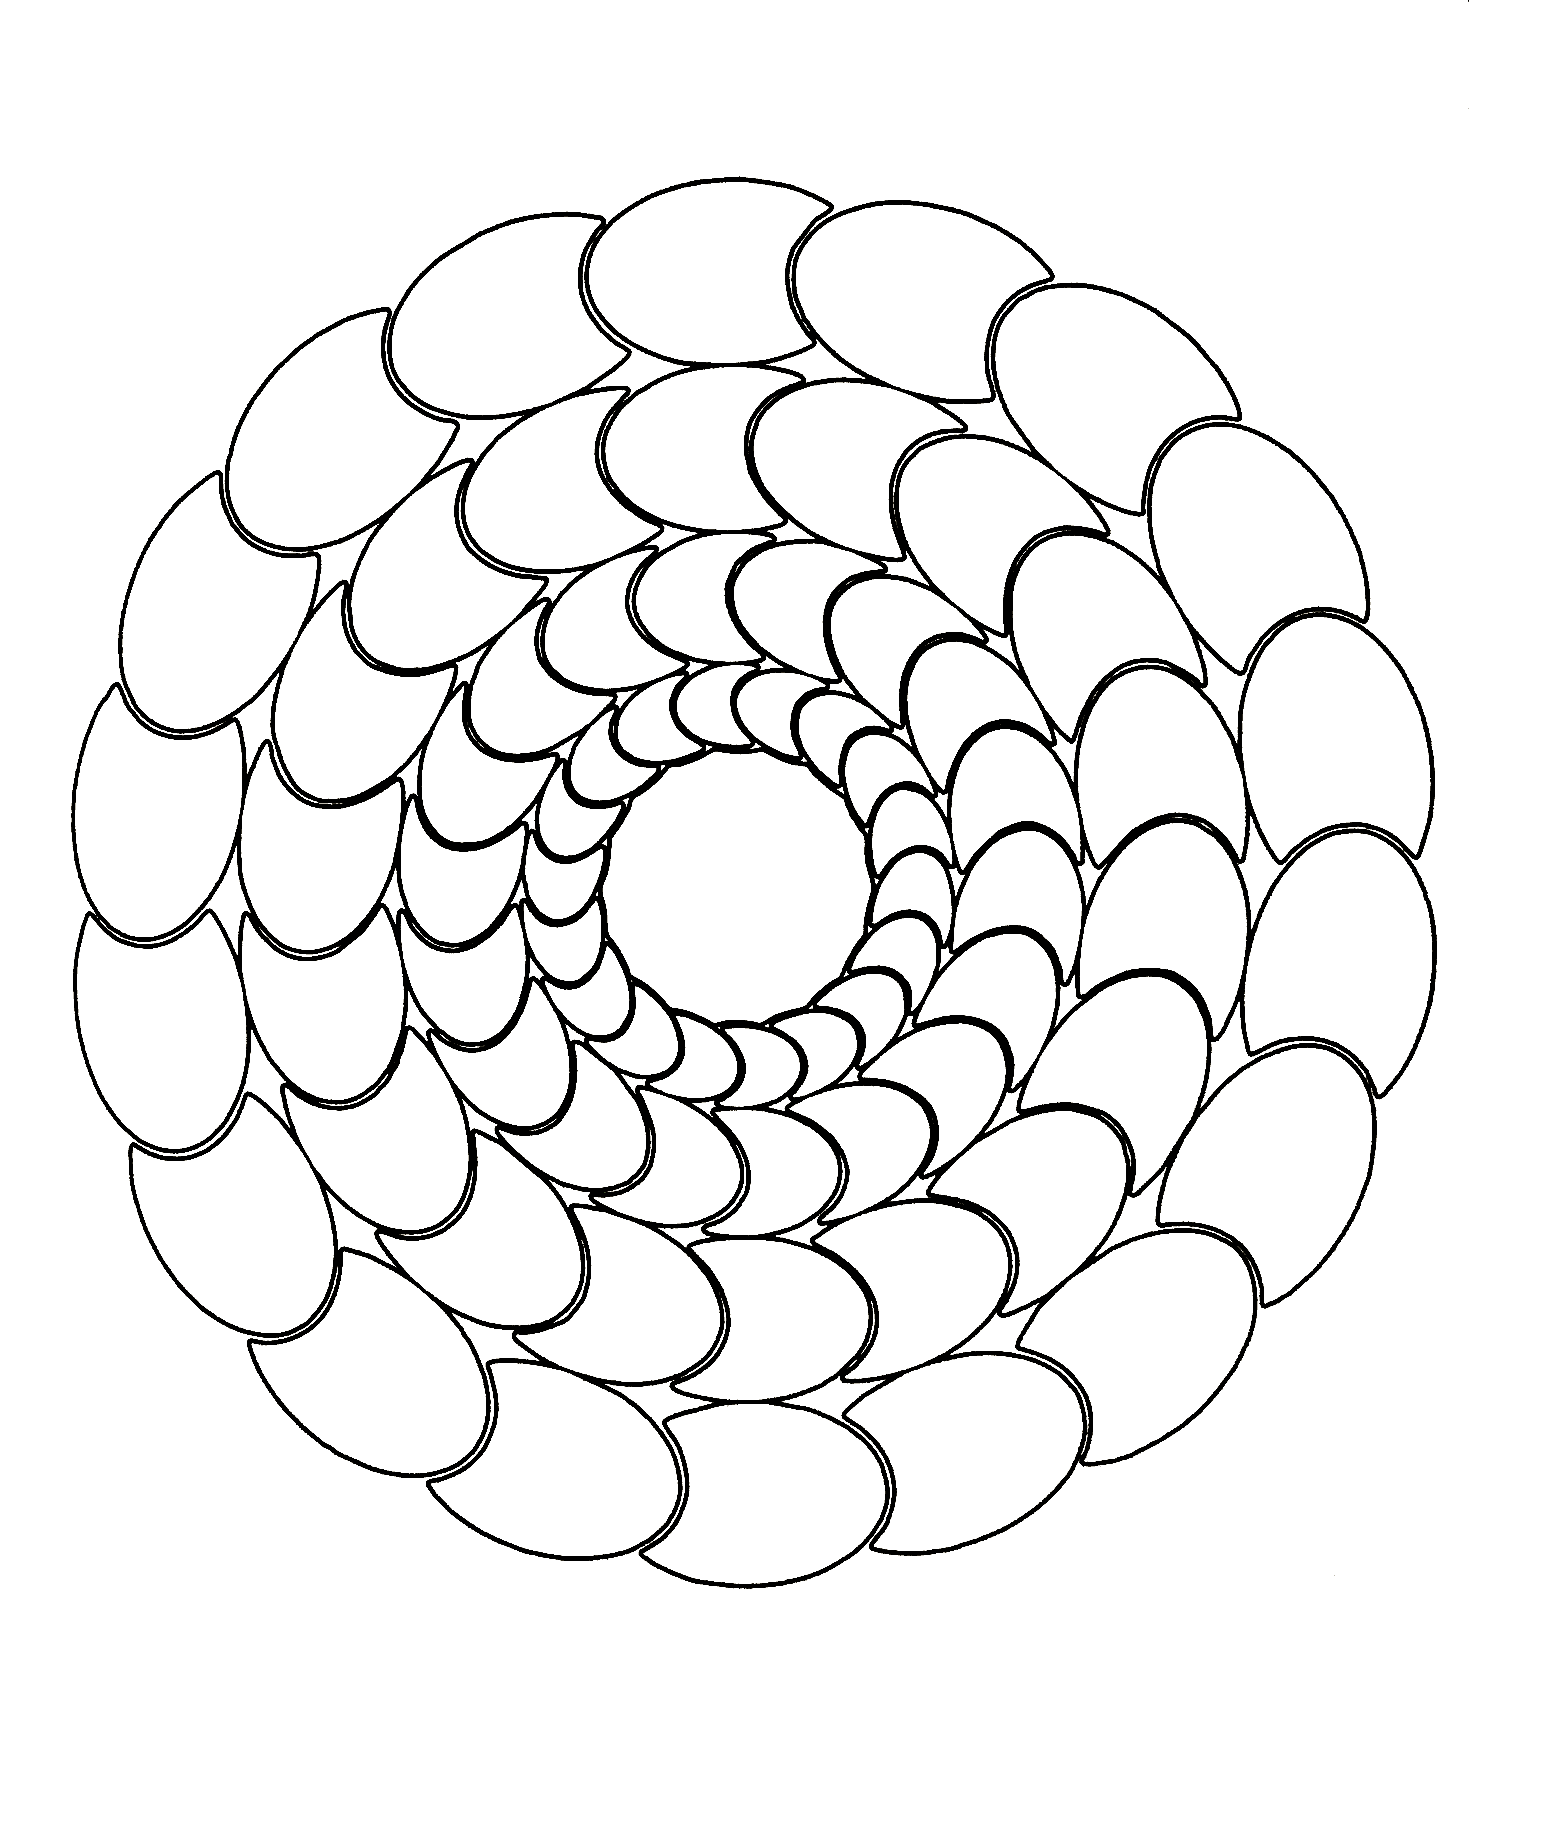 Magnifique mandala avec une succession de formes ovales. Simple à colorier.